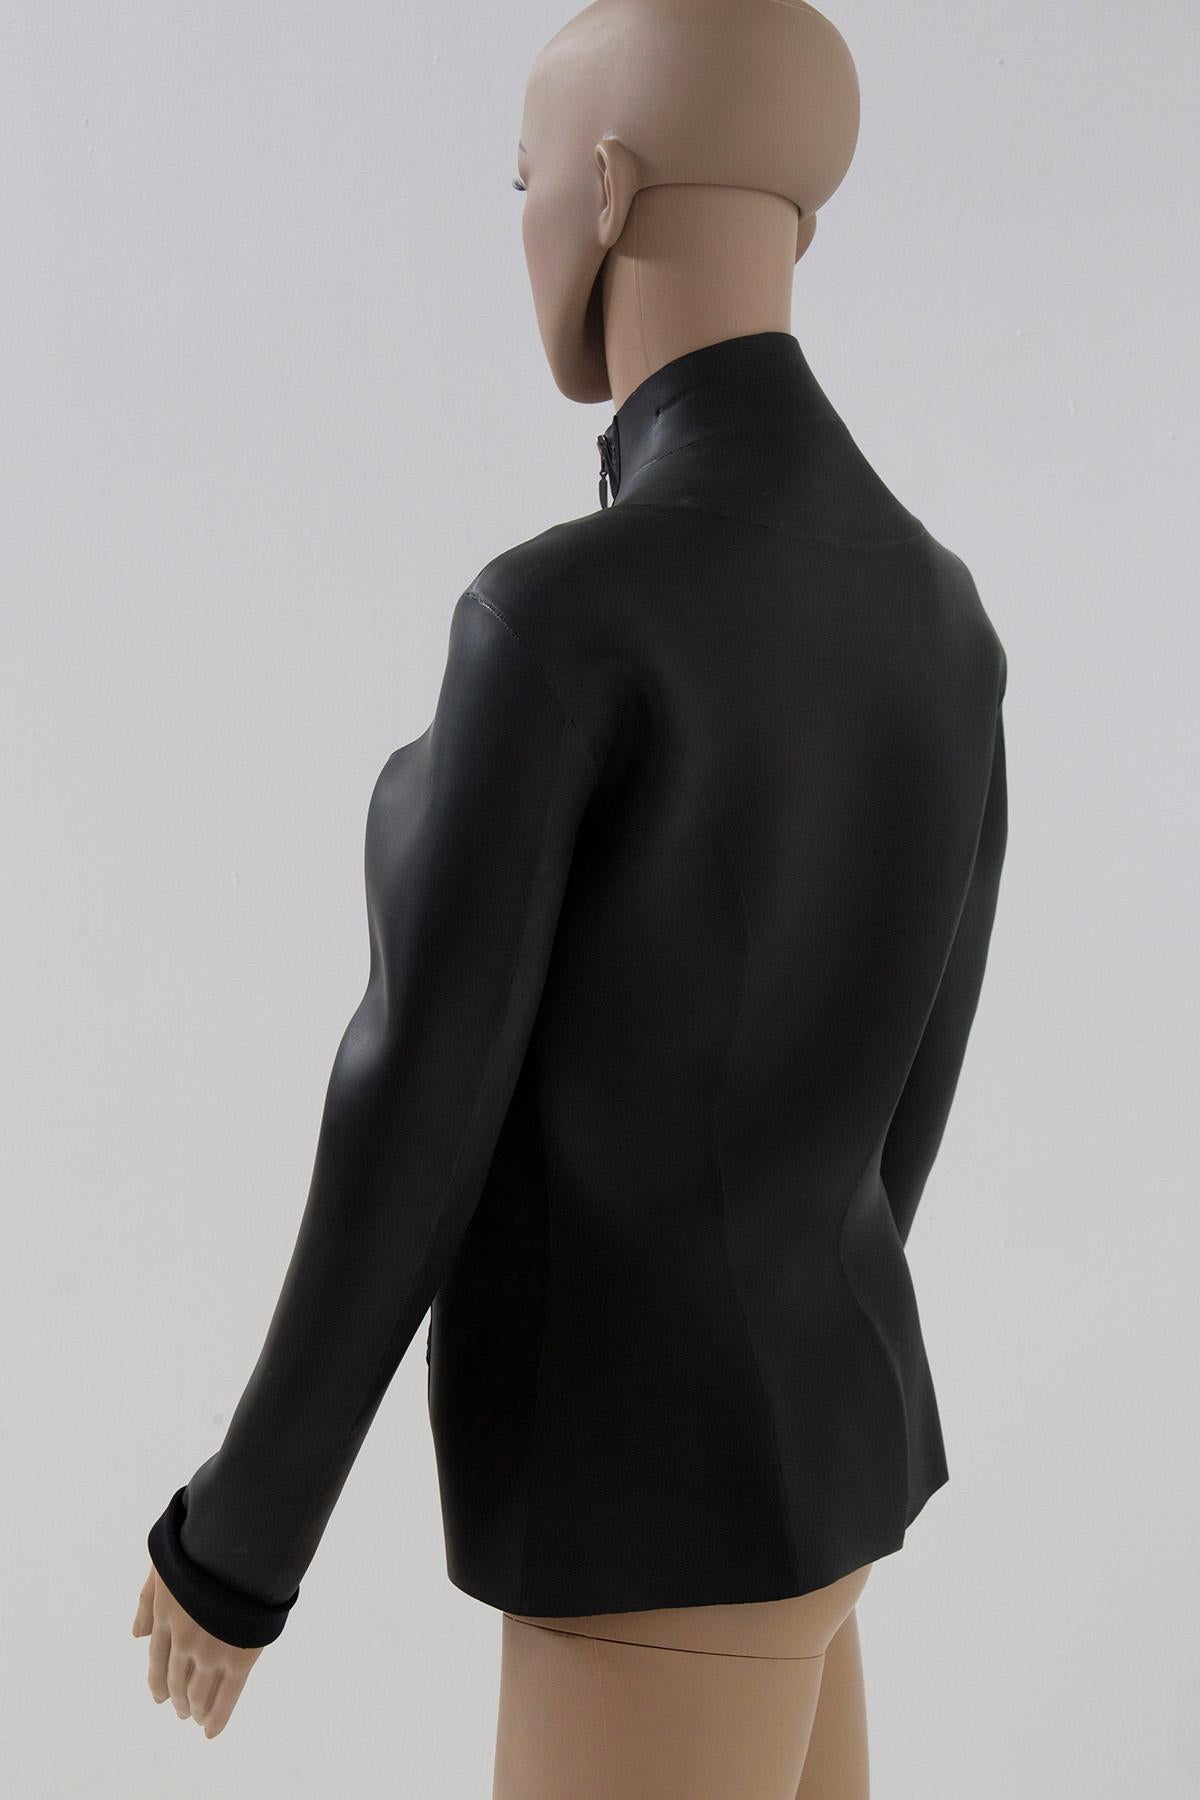 Jean Paul Gaultier modern suba/rubberized jacket For Sale 4